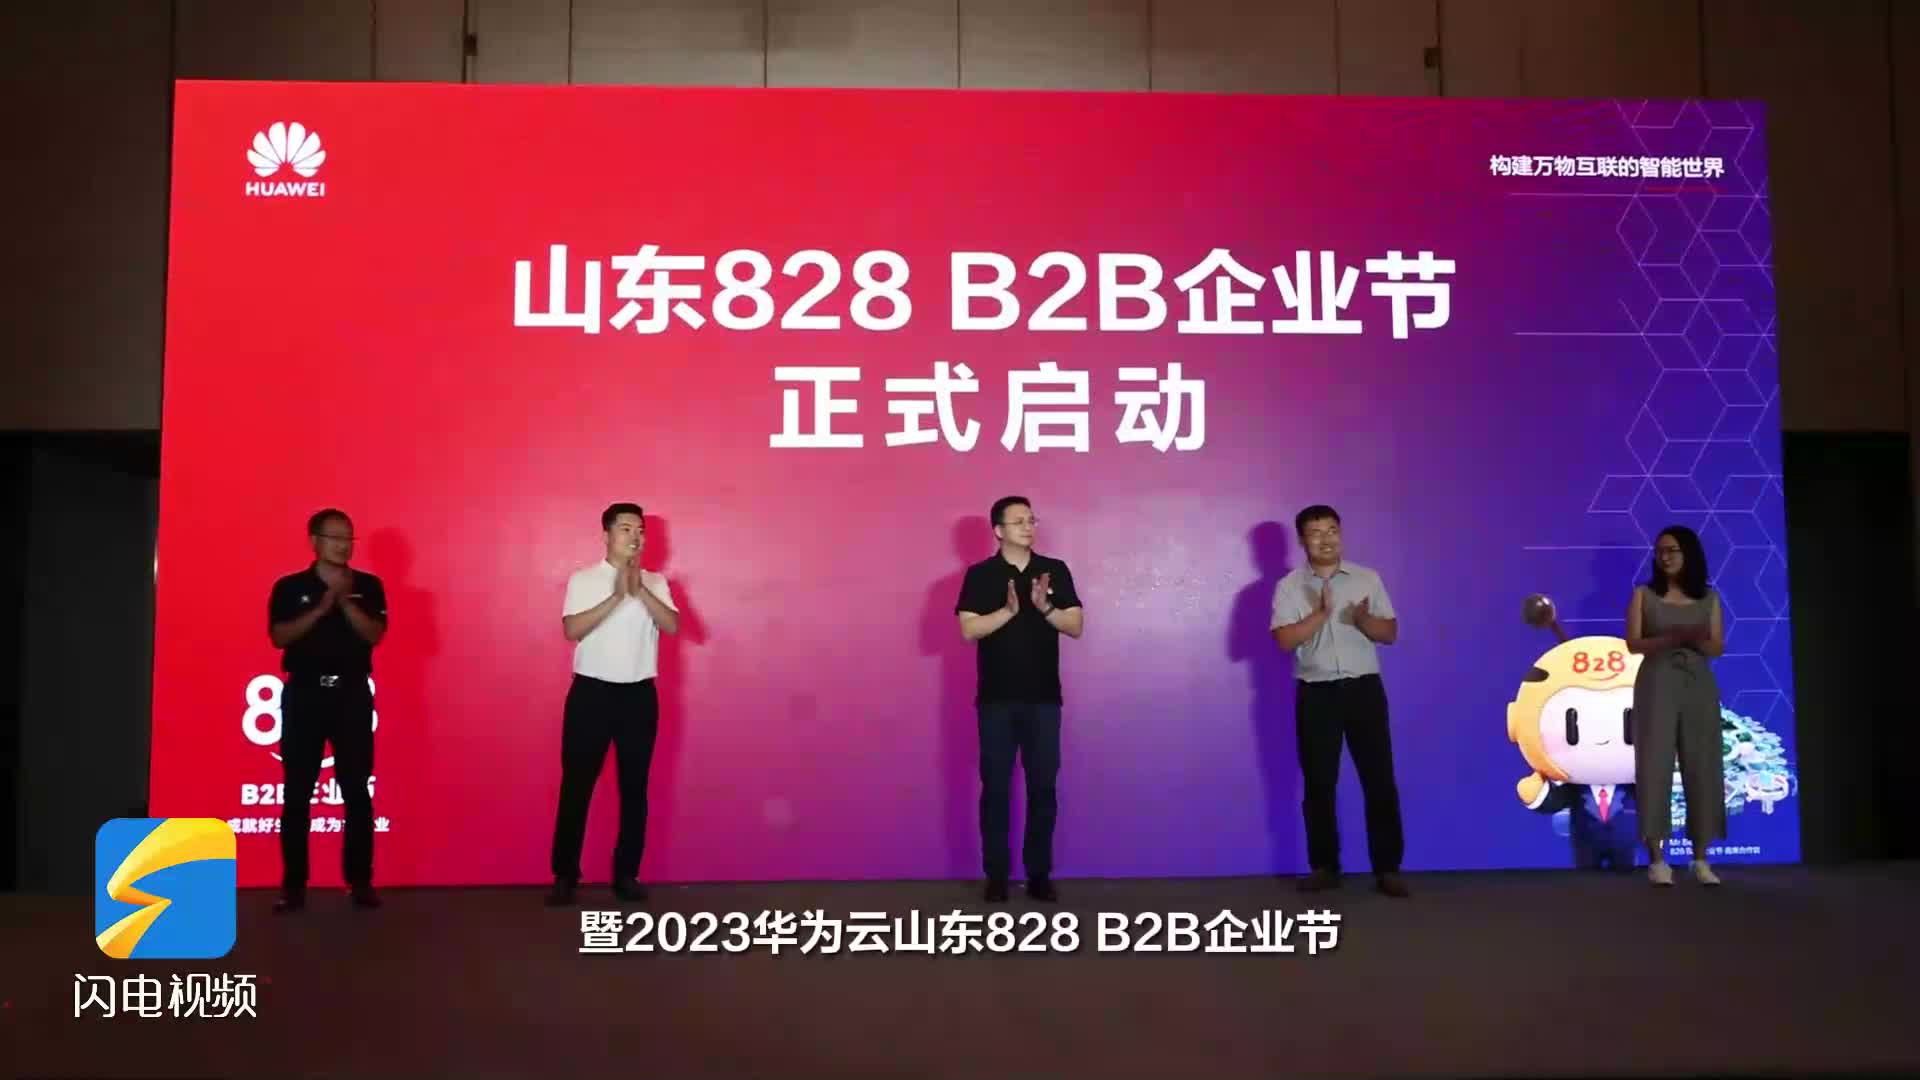 云领齐鲁 智赋万企 2023华为云山东828 B2B企业节开幕